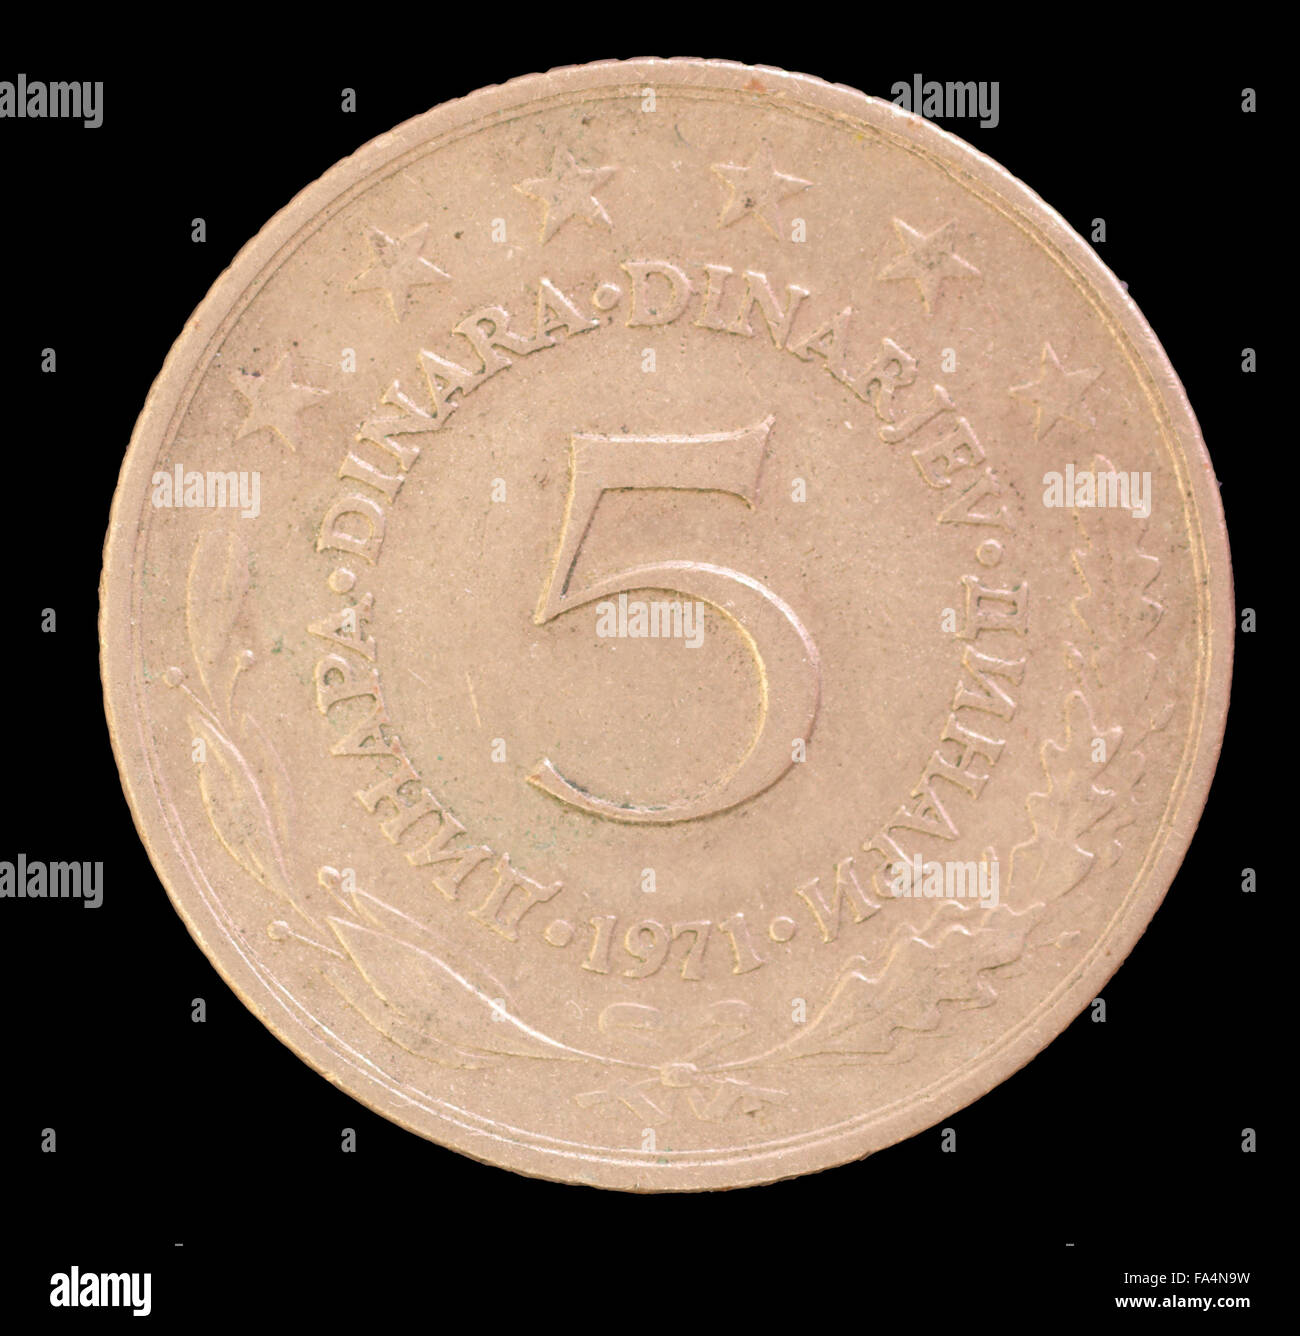 La face arrière de 5 pièce, dinar émis par la Yougoslavie en 1971. Droit isolé sur fond noir Banque D'Images